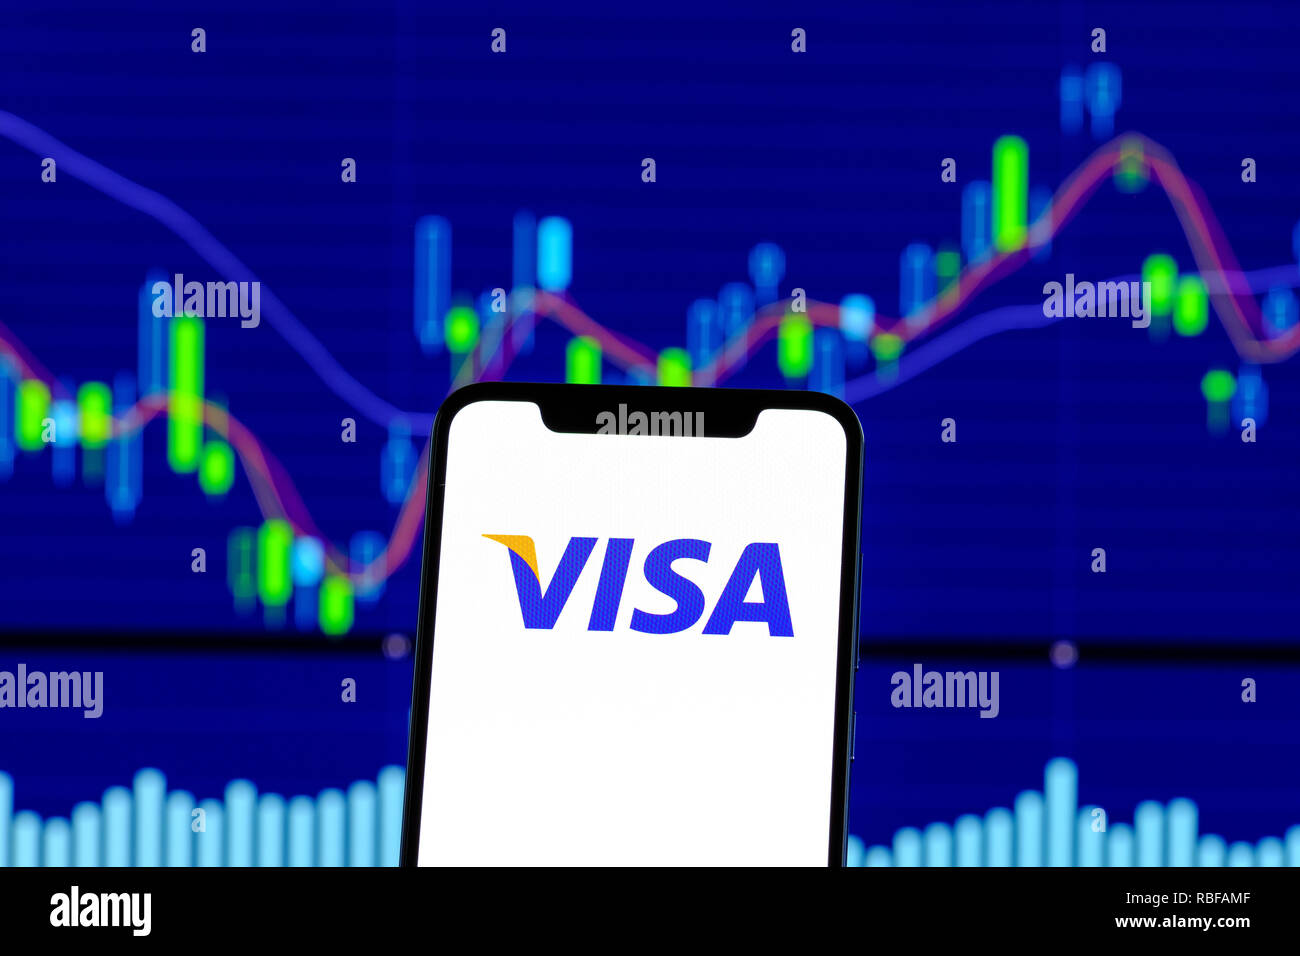 Visa Stock Chart